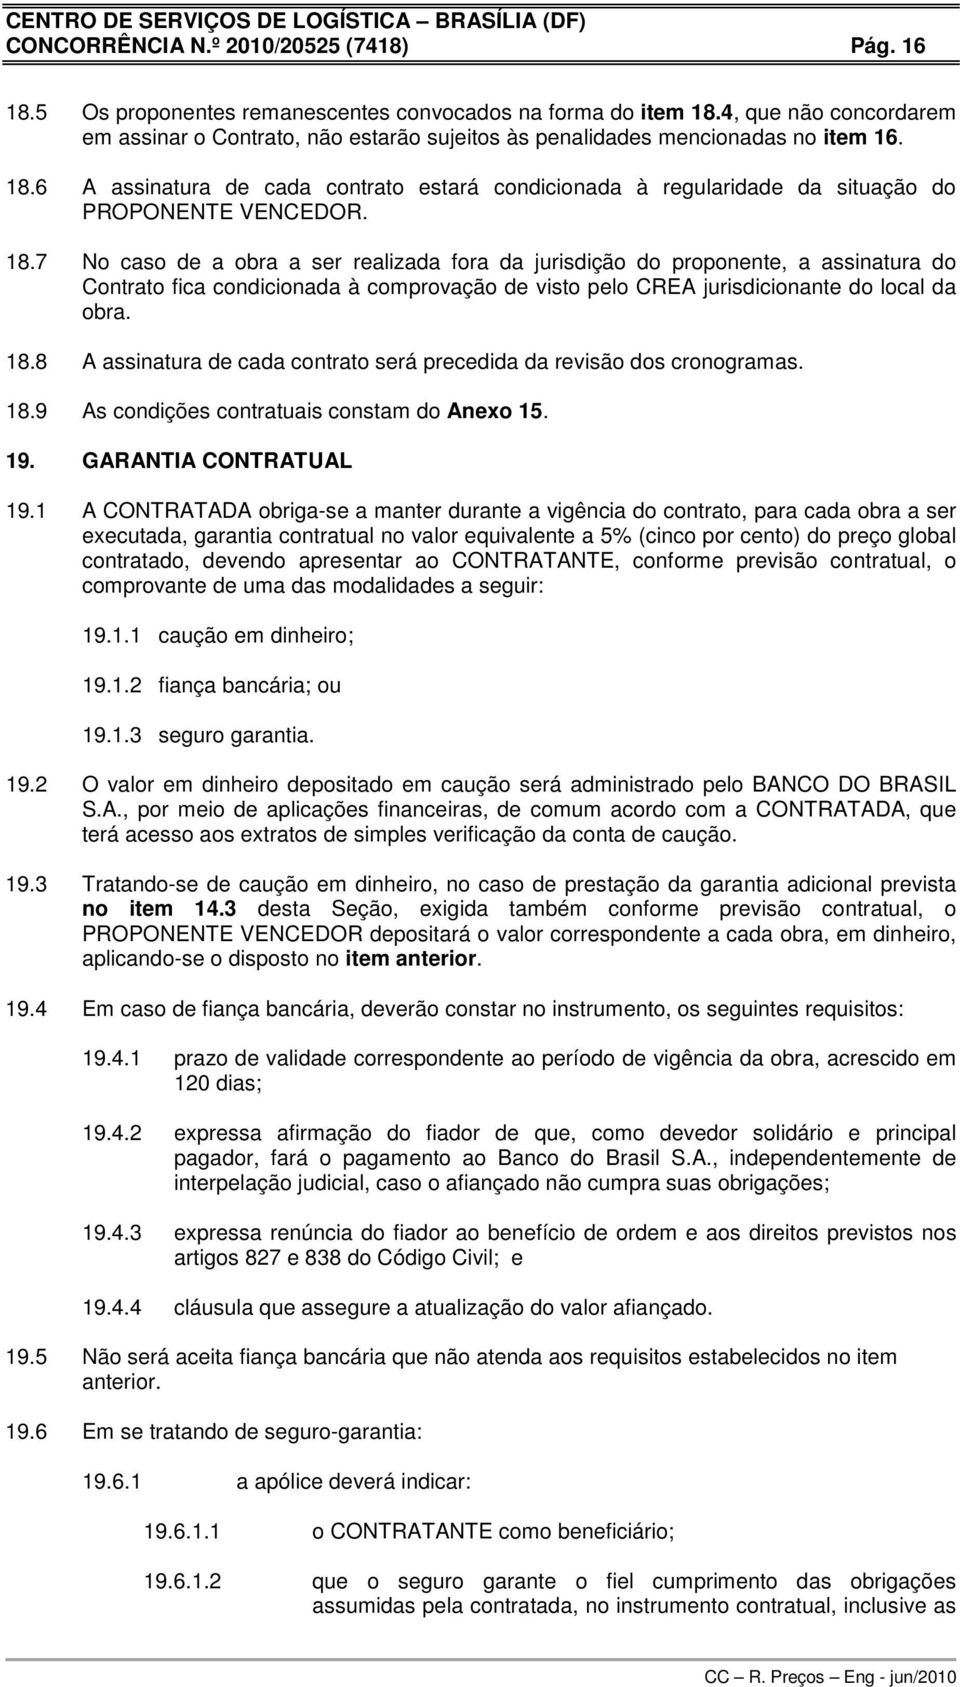 6 A assinatura de cada contrato estará condicionada à regularidade da situação do PROPONENTE VENCEDOR. 18.